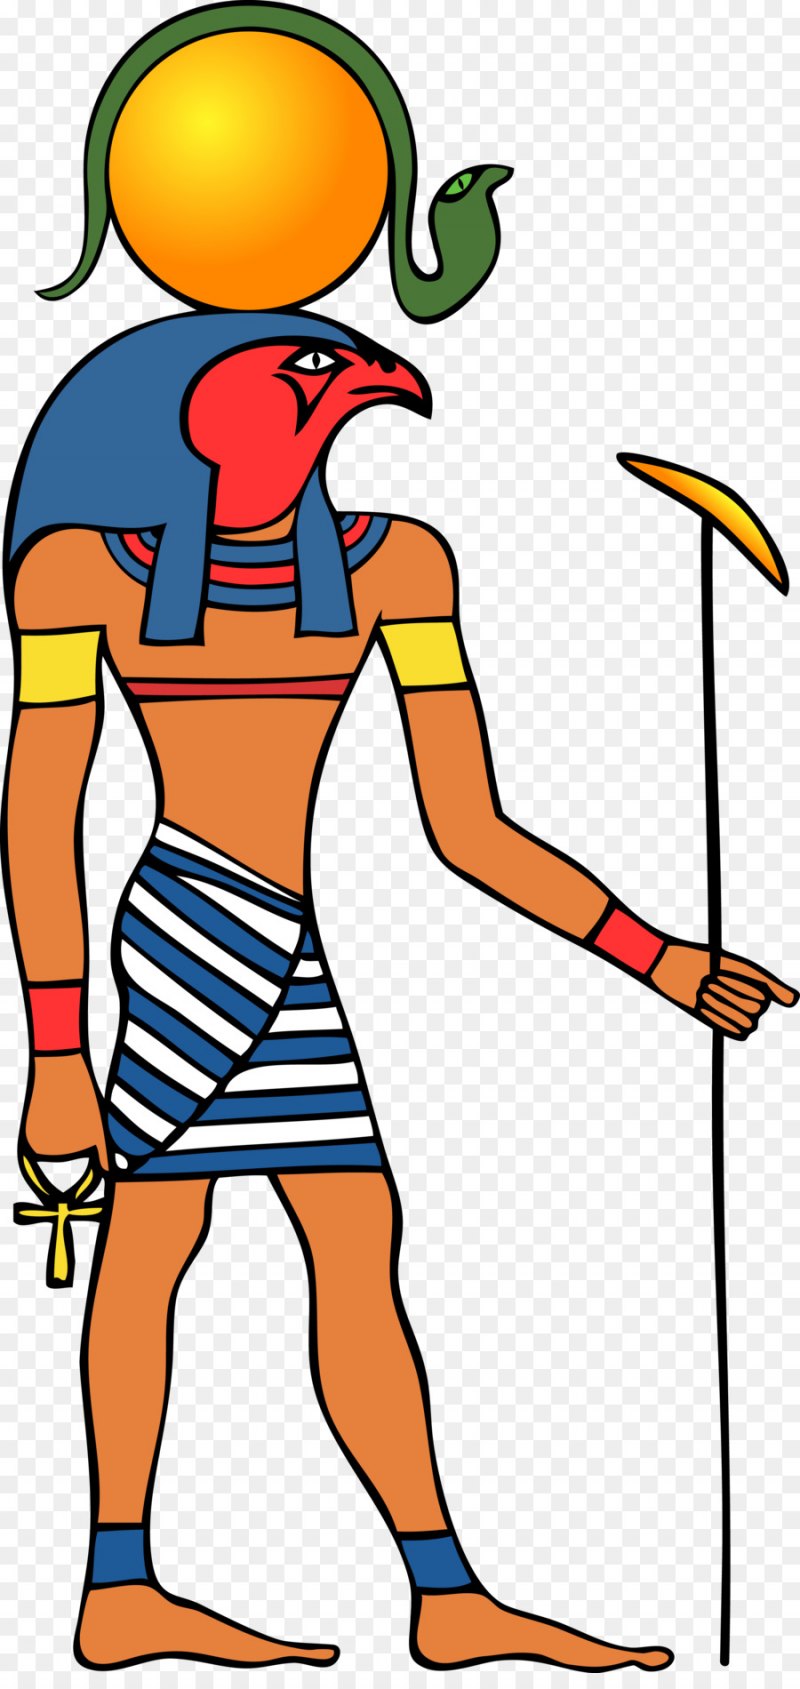 Боги египта детские рисунки